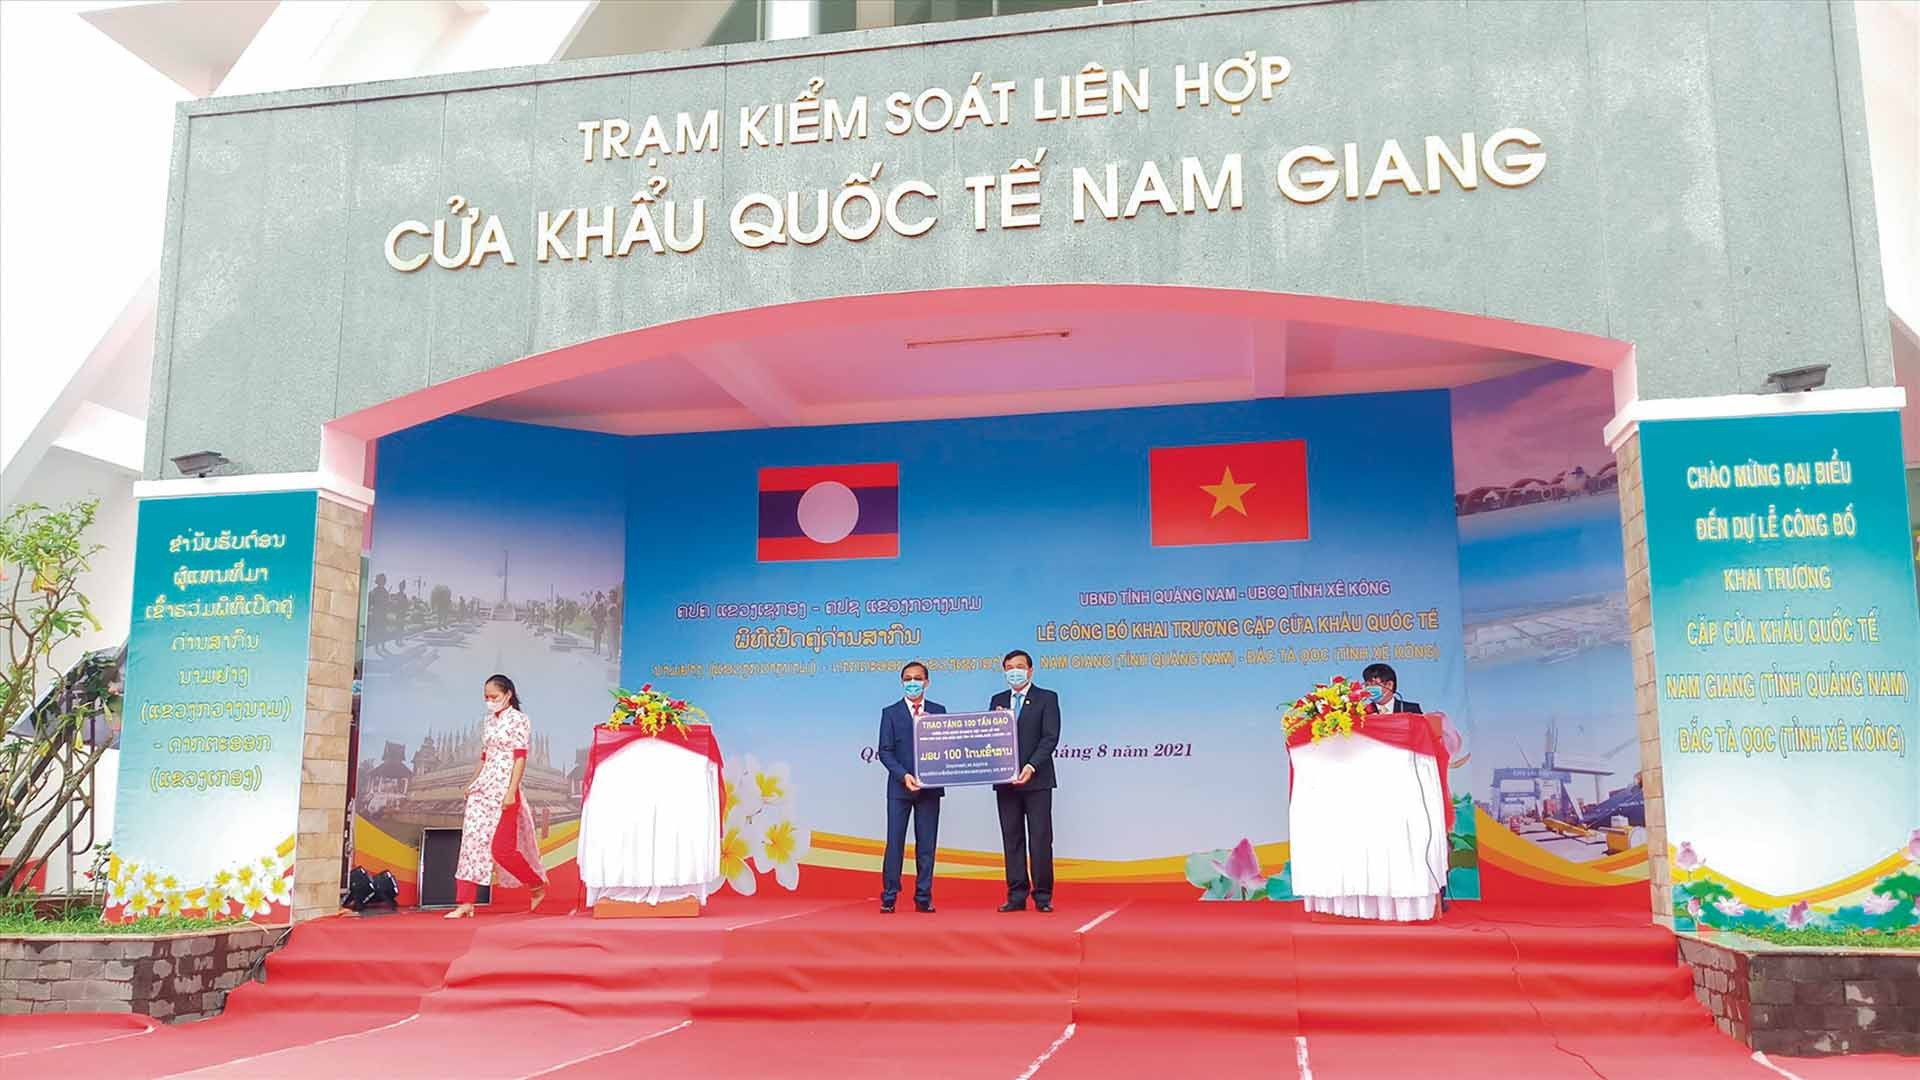 Lễ công bố khai trương cặp cửa khẩu quốc tế Nam Giang - Đắc Tà Oọc